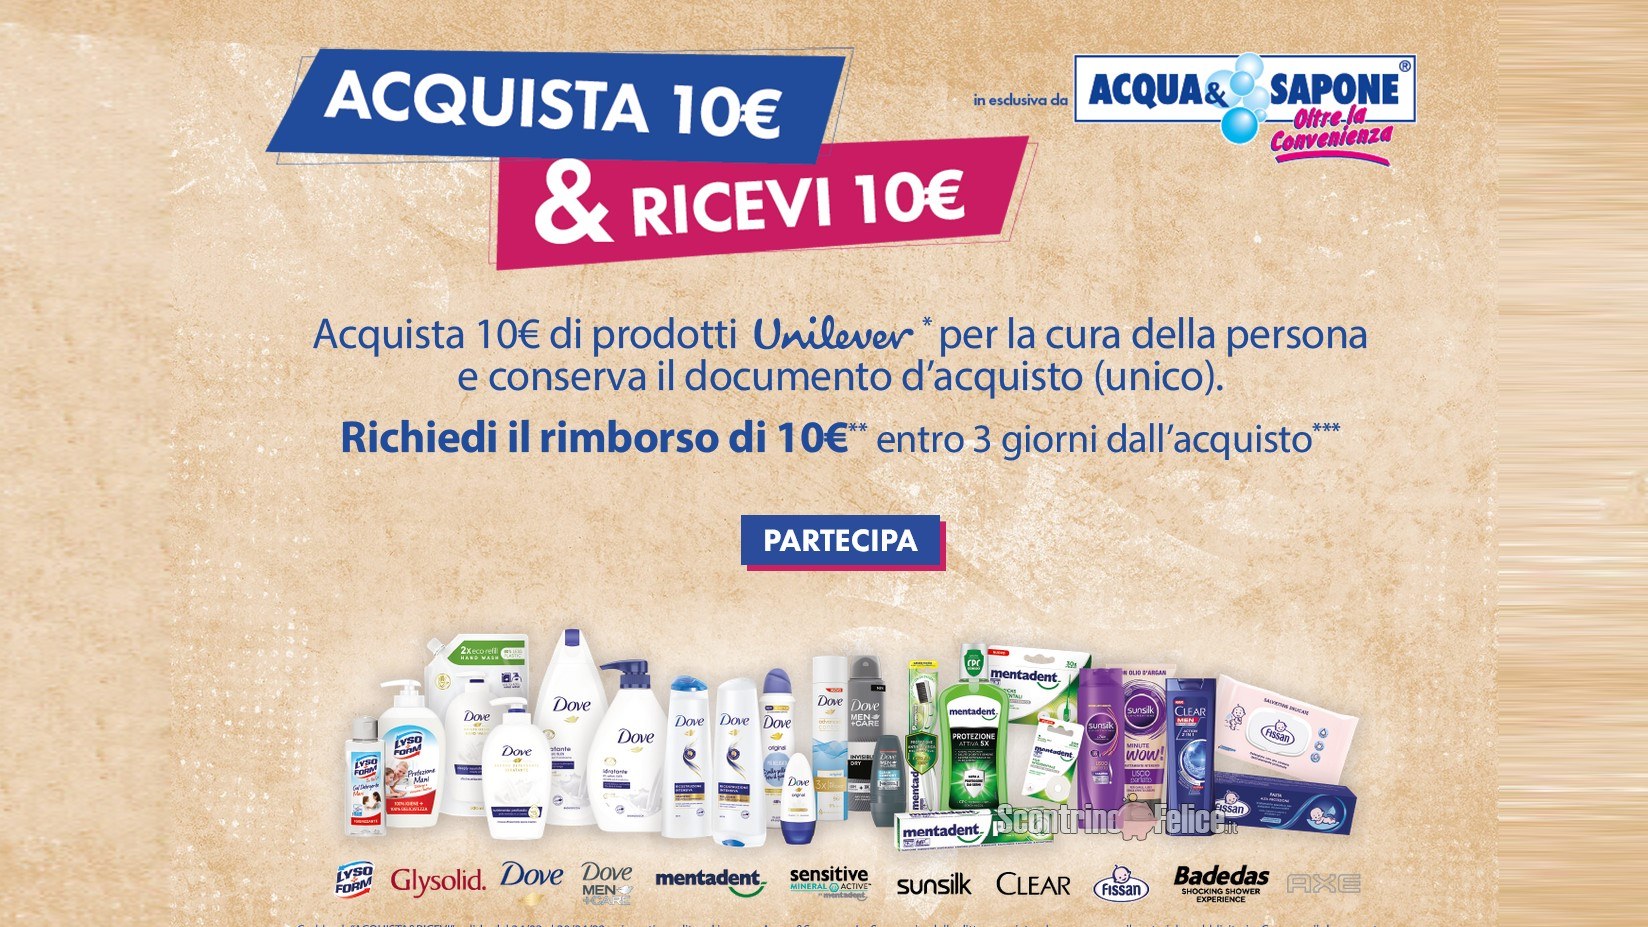 Cashback Unilever "Acquista&Ricevi" da Acqua&Sapone e La Saponeria: spendi e riprendi 10 euro